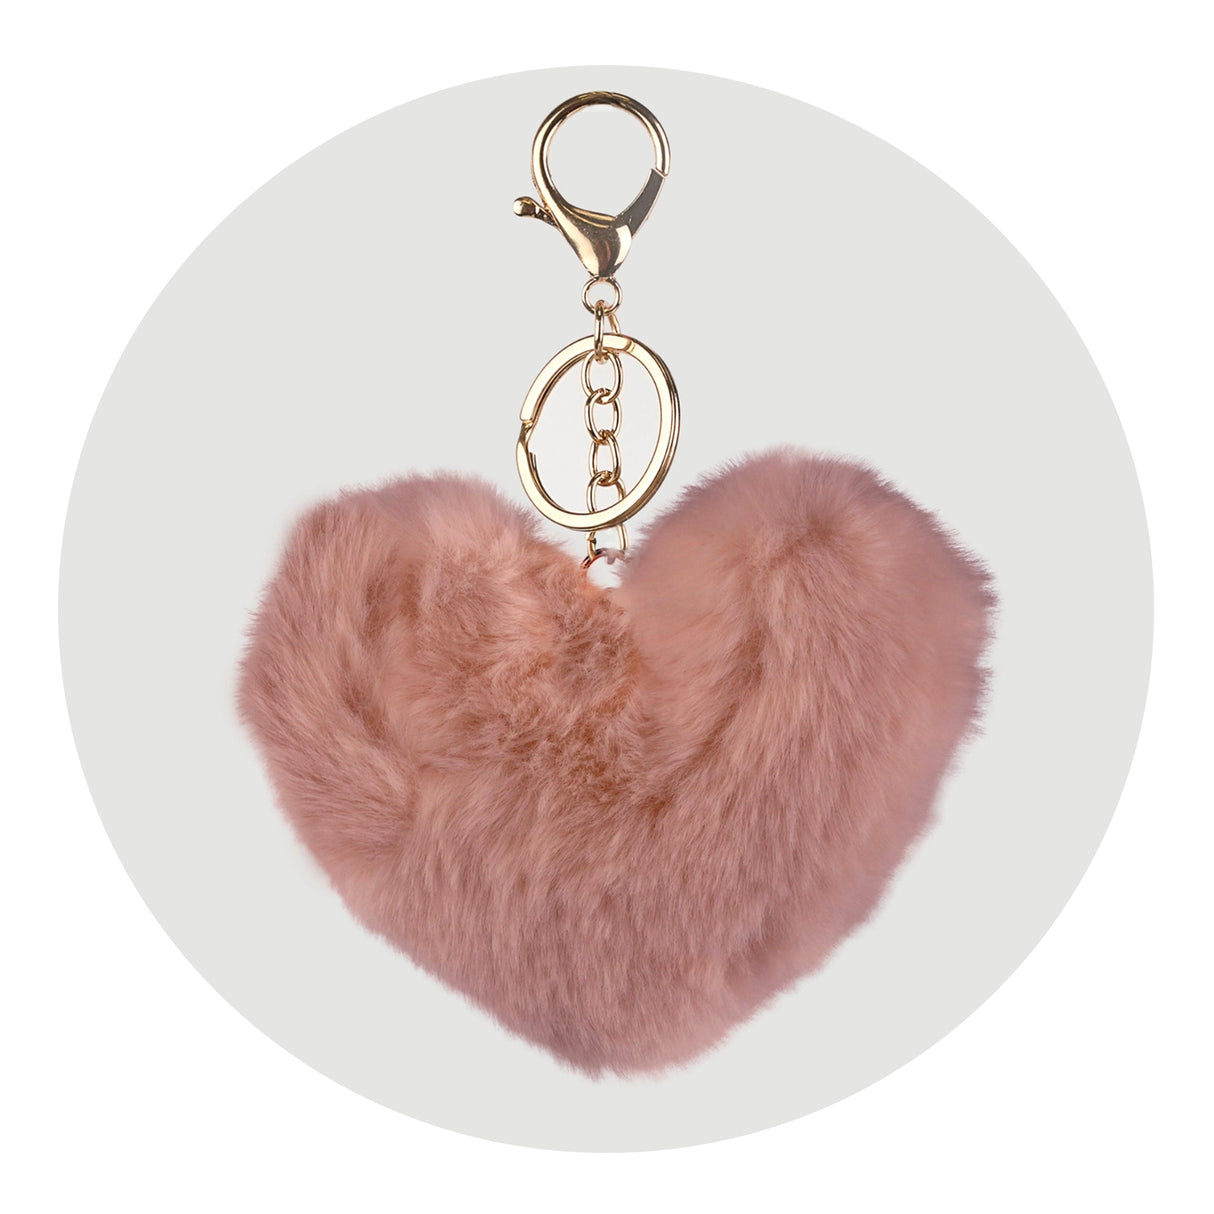 Pom Pom Heart Key Chain - Pillow Pink